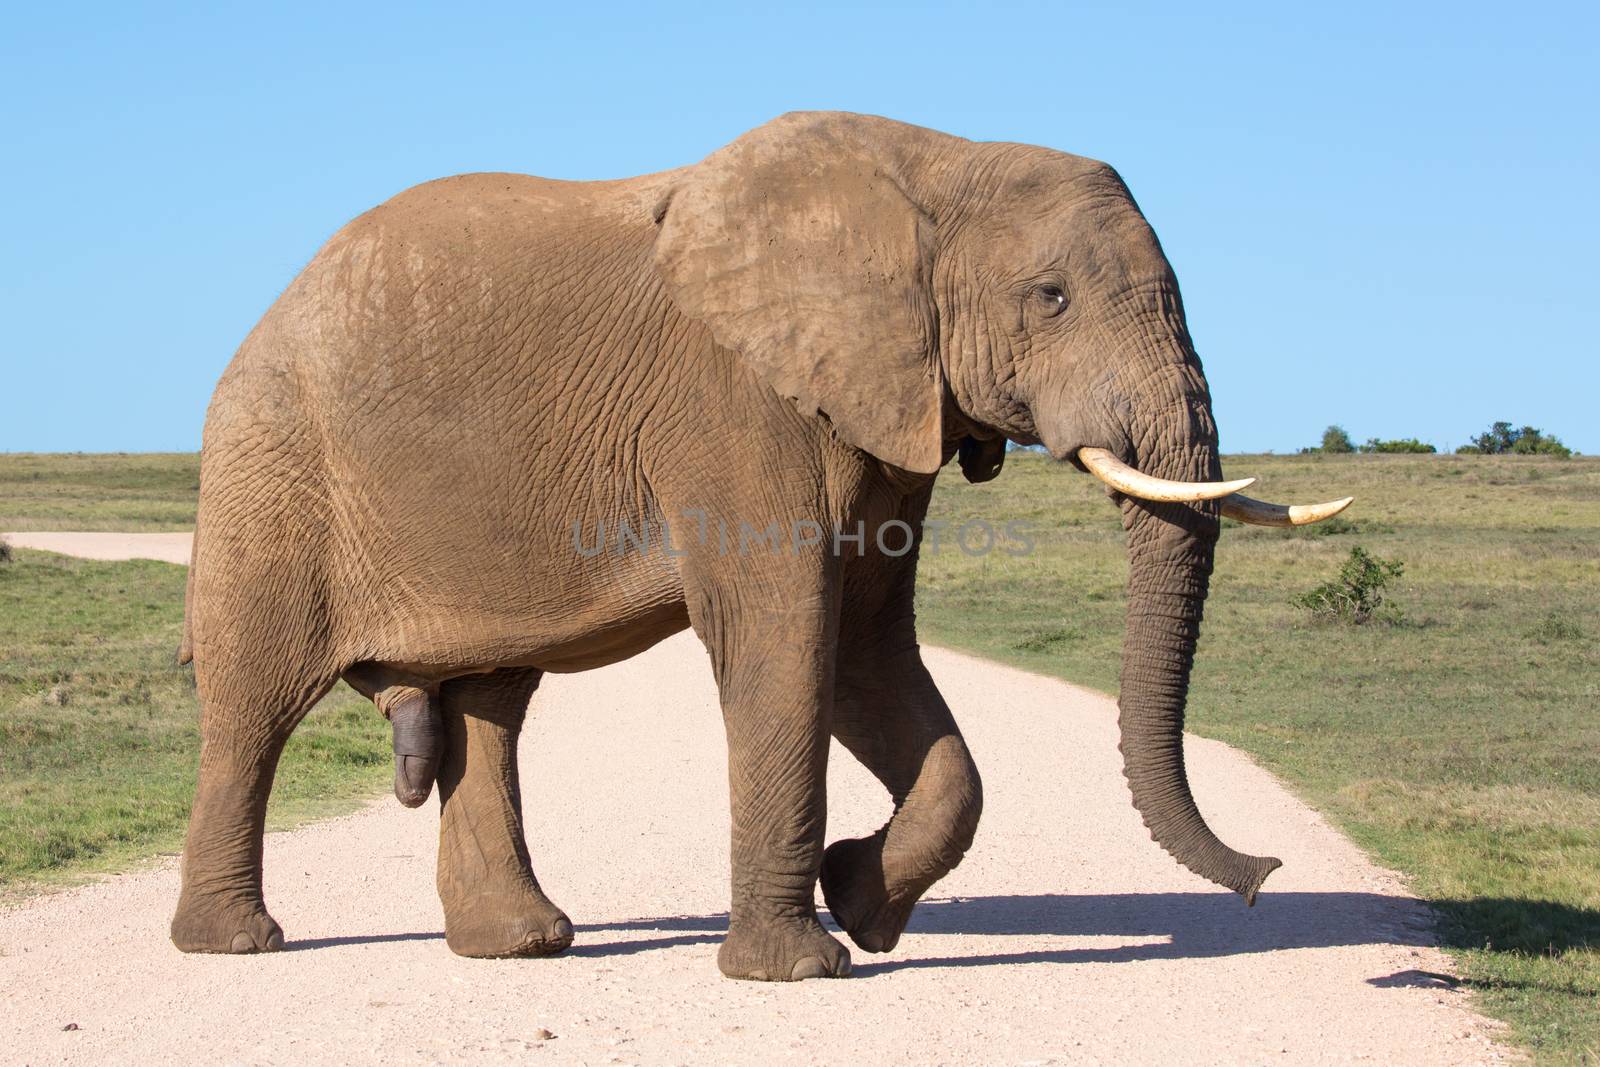 African Elephant Male by fouroaks